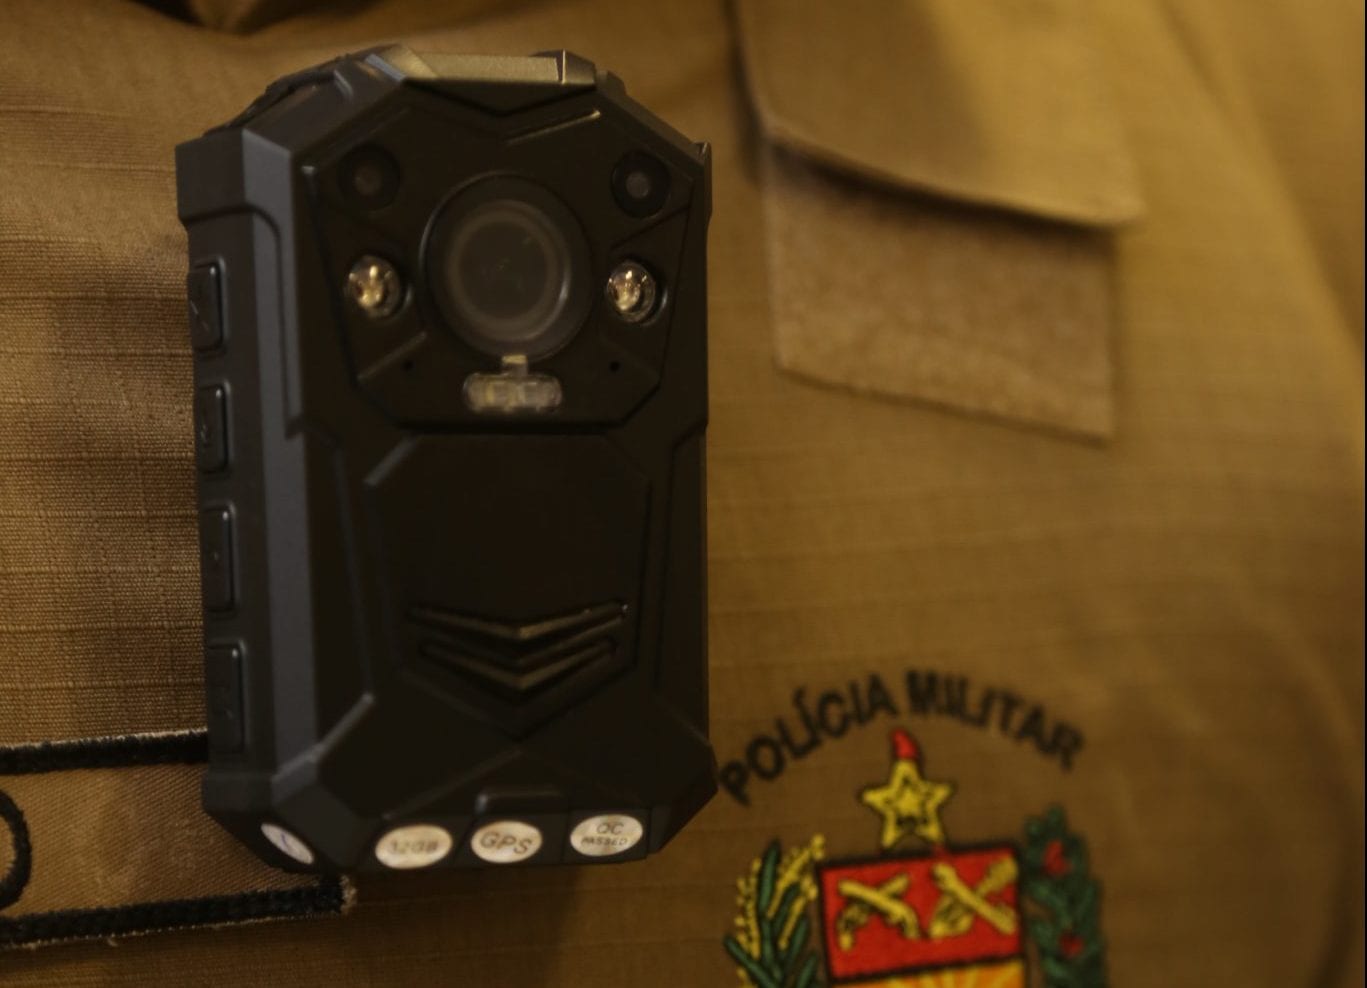 Os policiais contarão com câmeras fixadas nos uniformes, o que vai aumentar a transparência das ações (Jeferson Baldo/Secom)